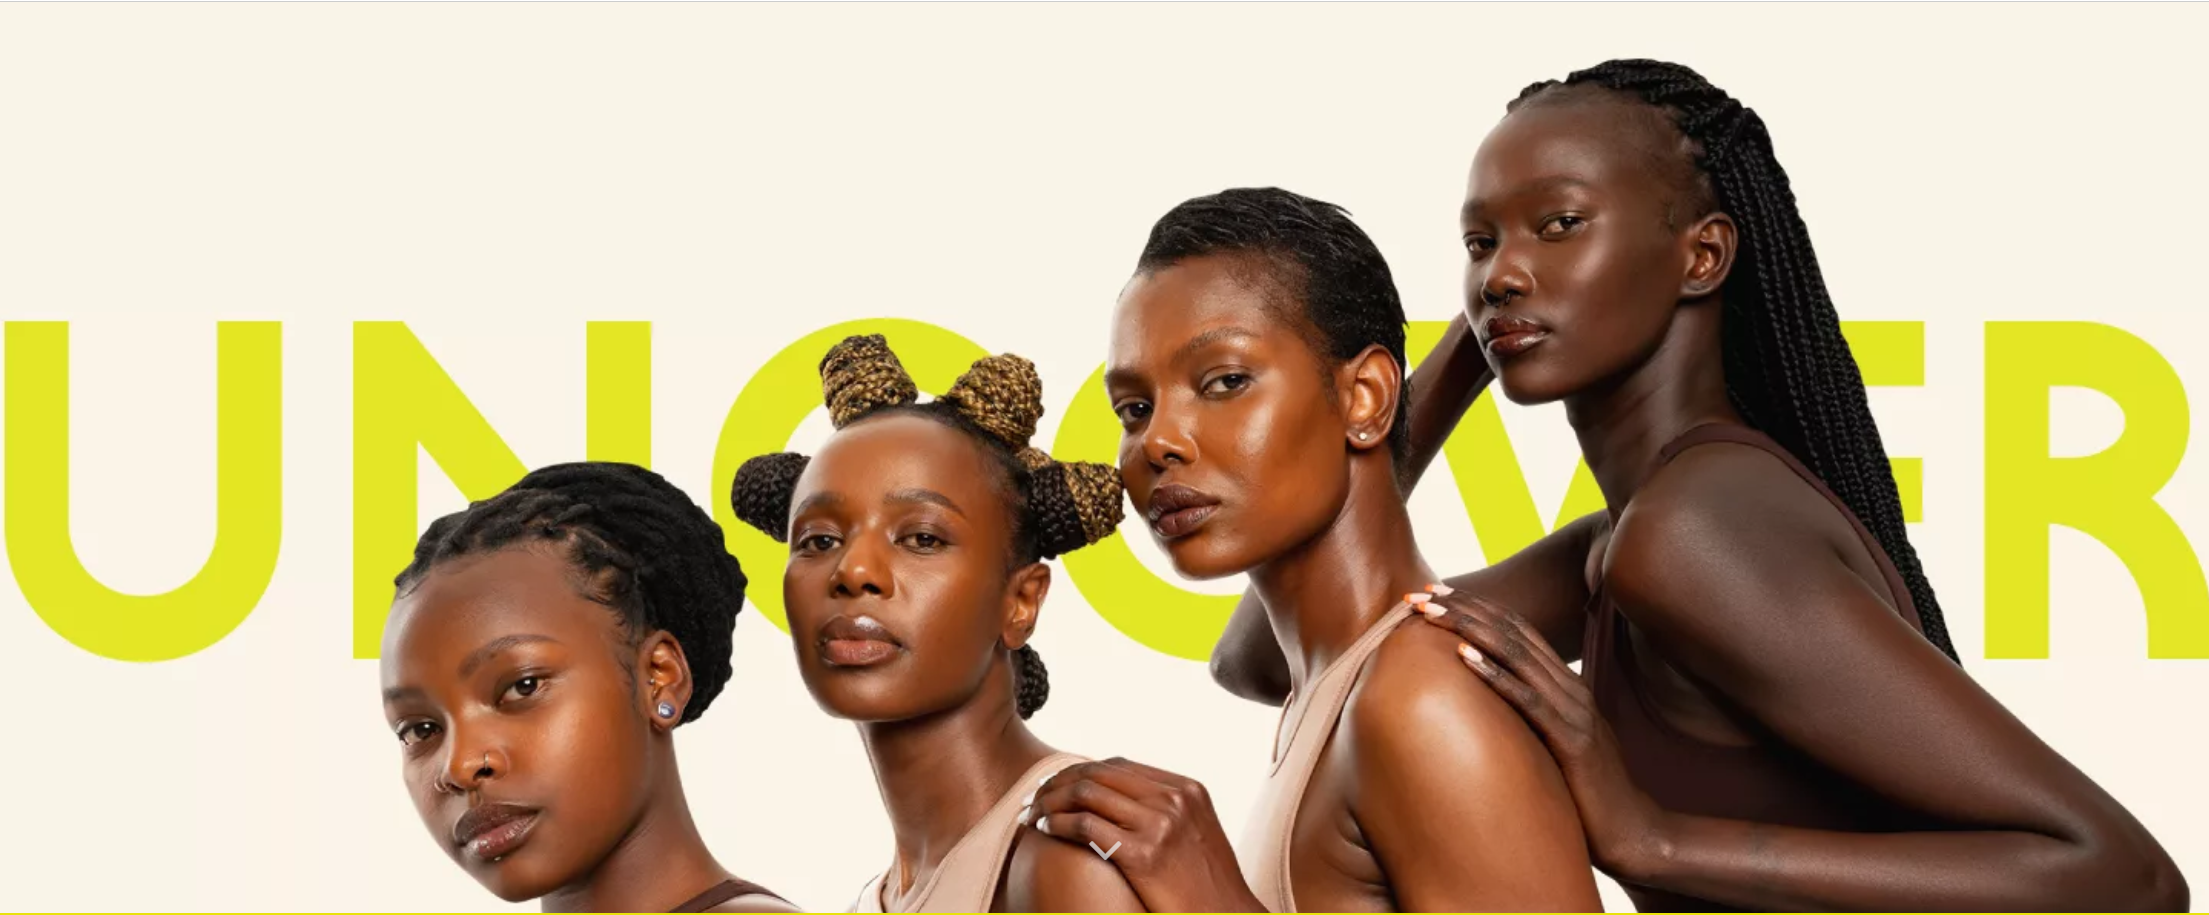 肯尼亚美容品牌Uncover完成140万美元种子轮融资